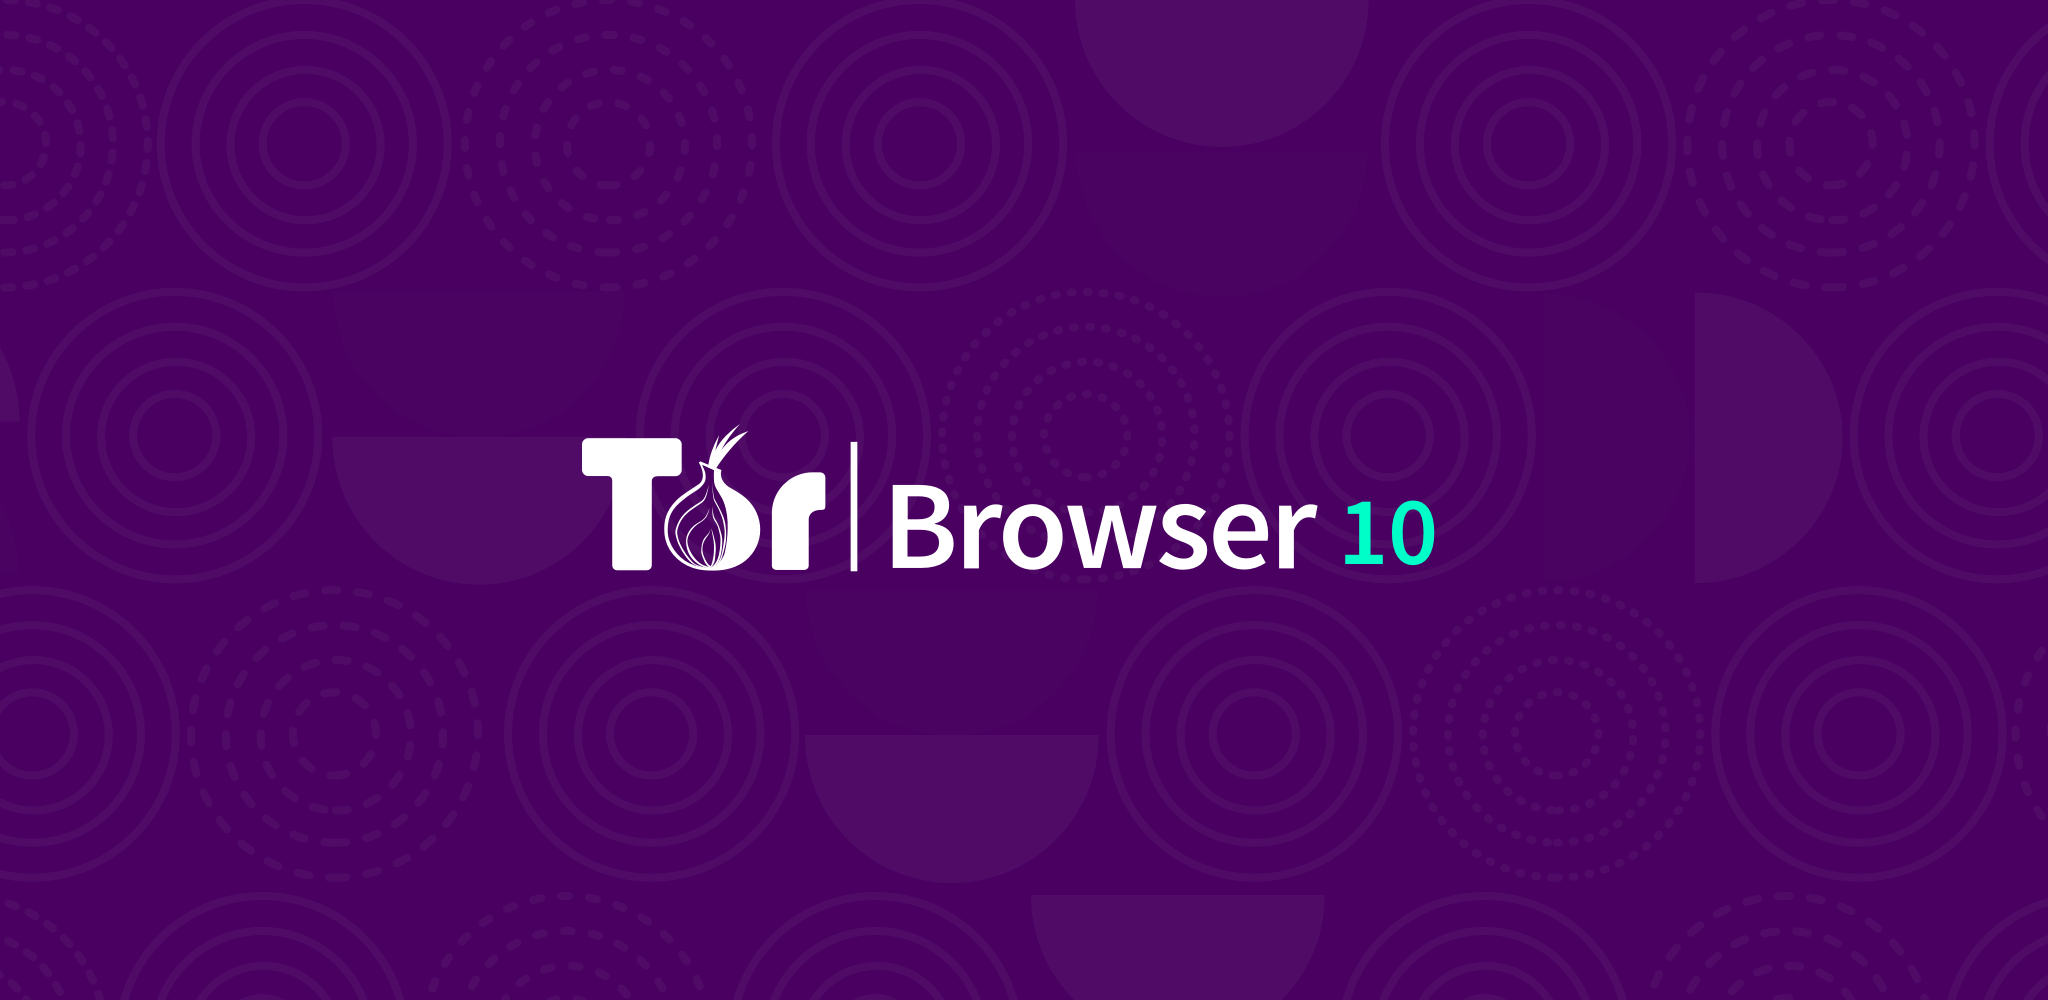 Скачать tor browser windows xp мега браузер тор не работает поиск в мега